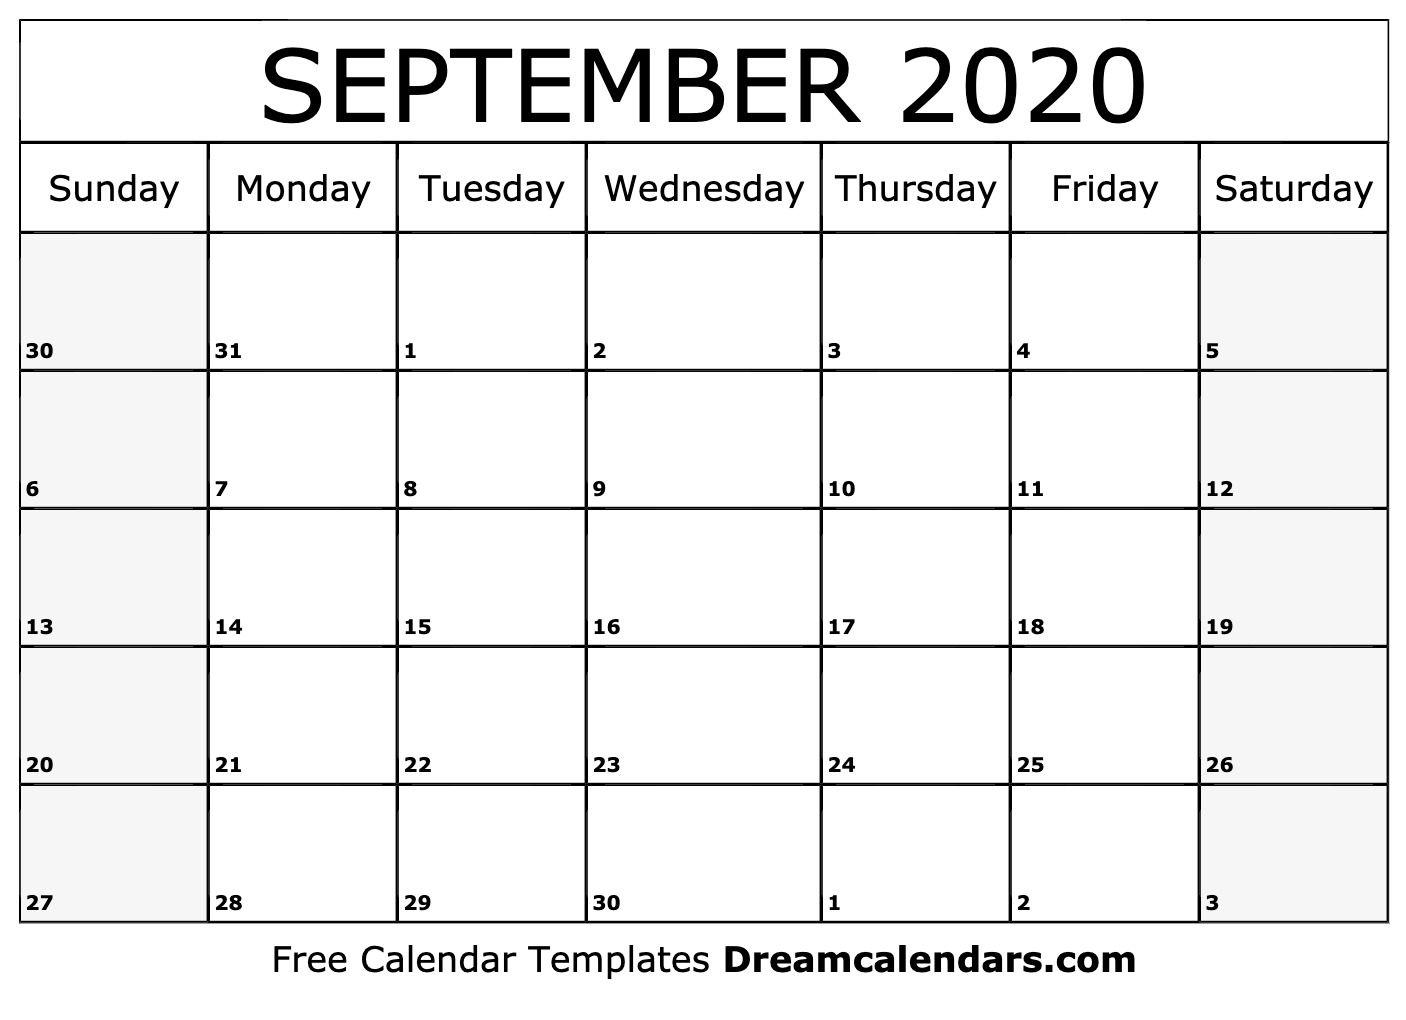 September 2020 Calendar Wallpaper Free September 2020